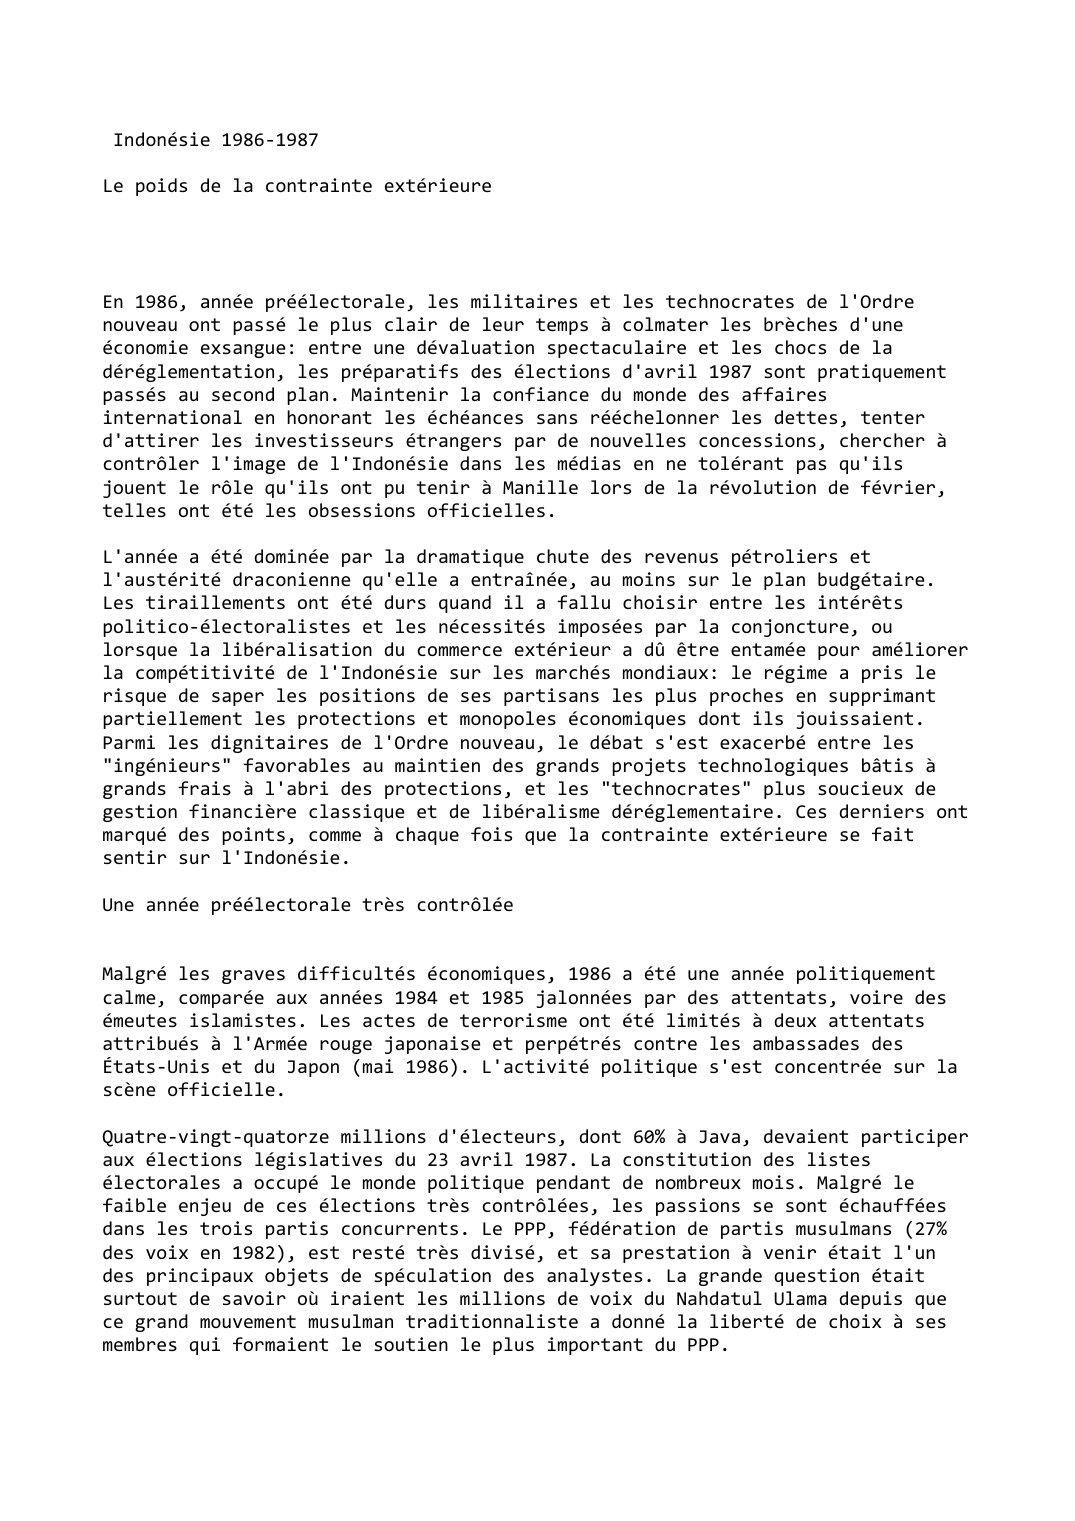 Prévisualisation du document Indonésie (1986-1987)

Le poids de la contrainte extérieure